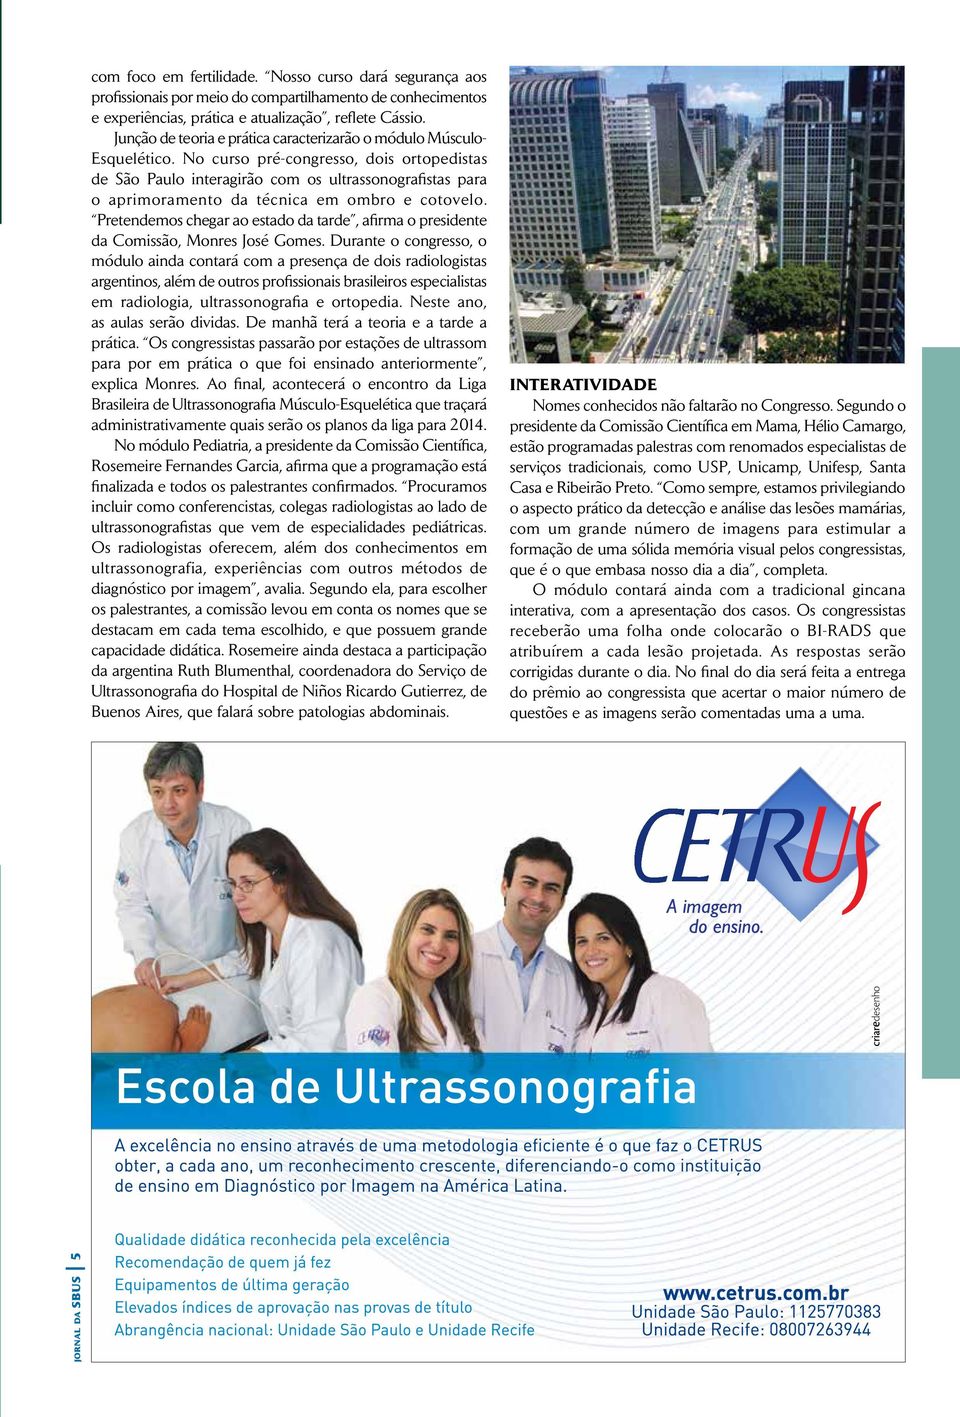 No curso pré-congresso, dois ortopedistas de São Paulo interagirão com os ultrassonografistas para o aprimoramento da técnica em ombro e cotovelo.